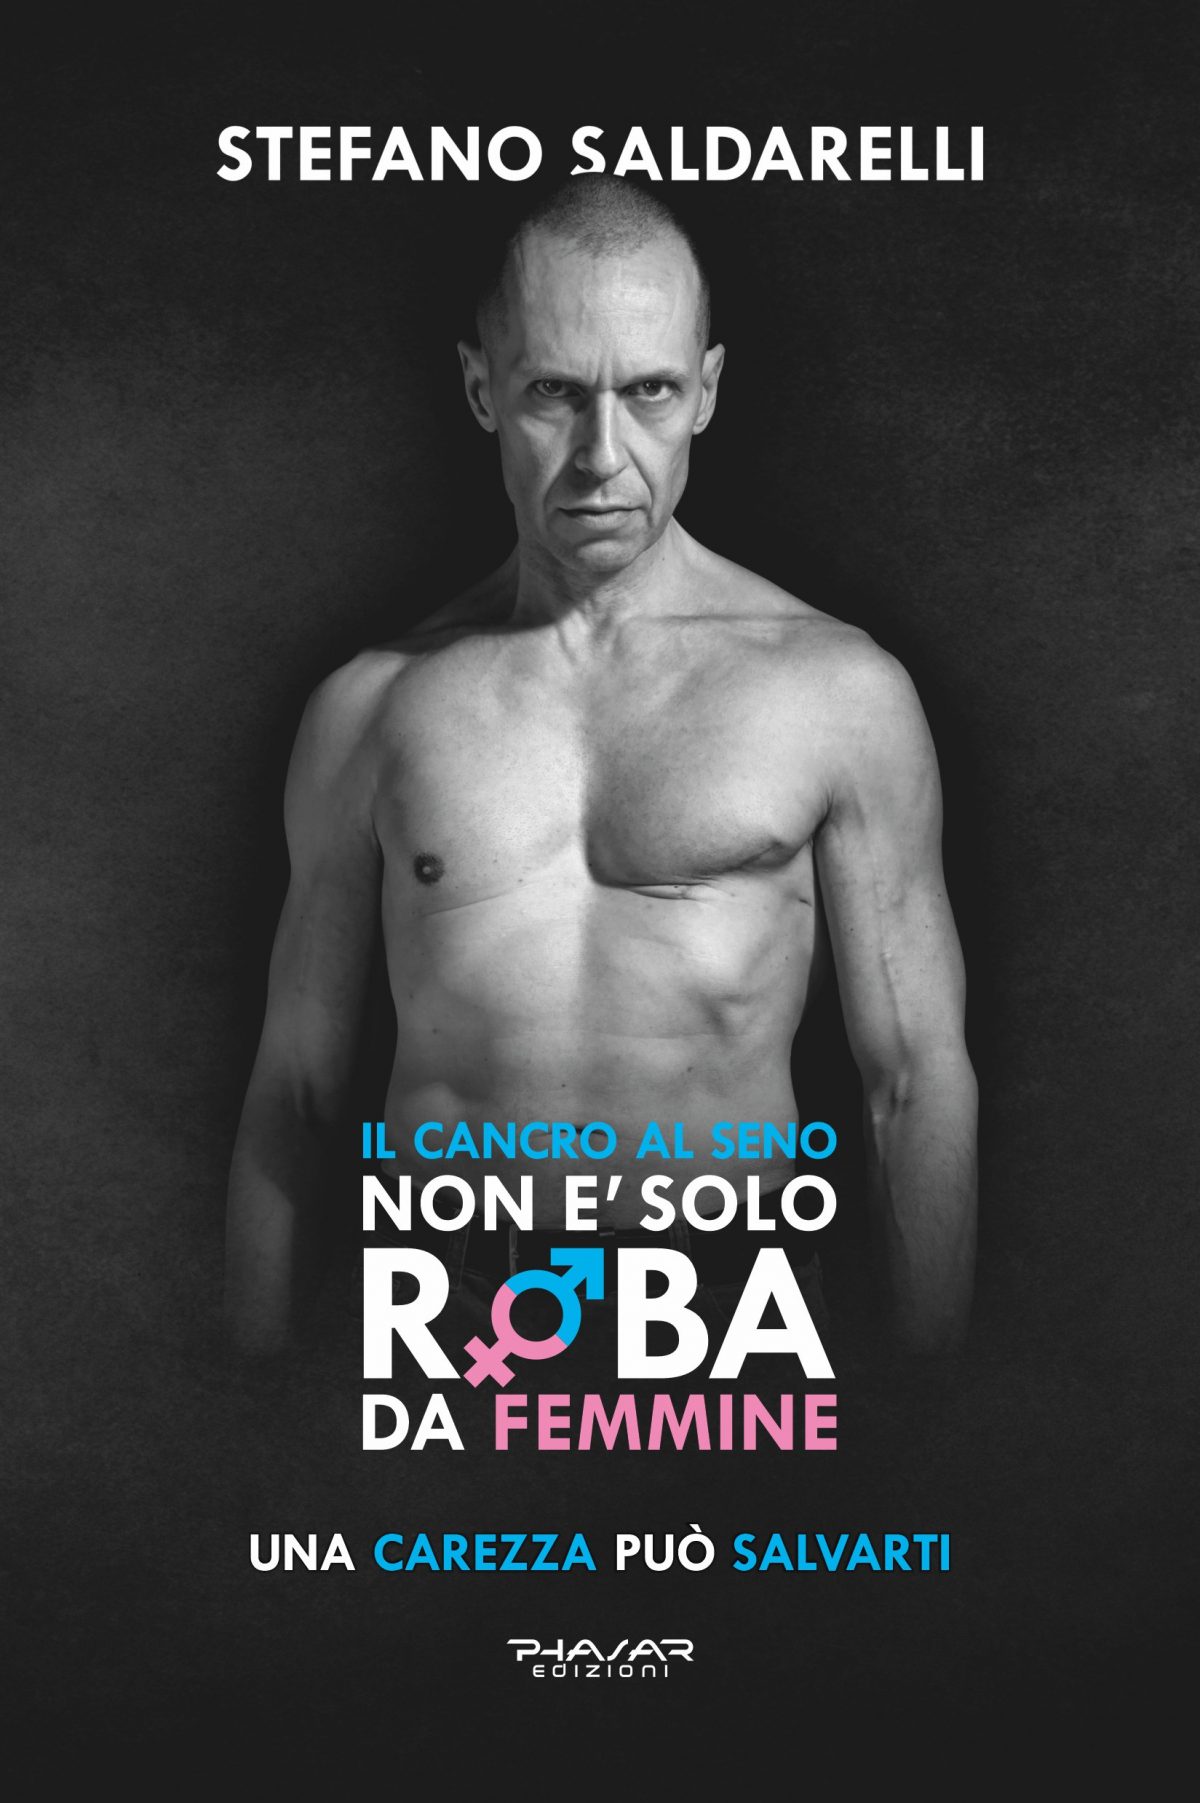 “Il cancro al seno non è solo roba da femmine di Stefano Saldarelli